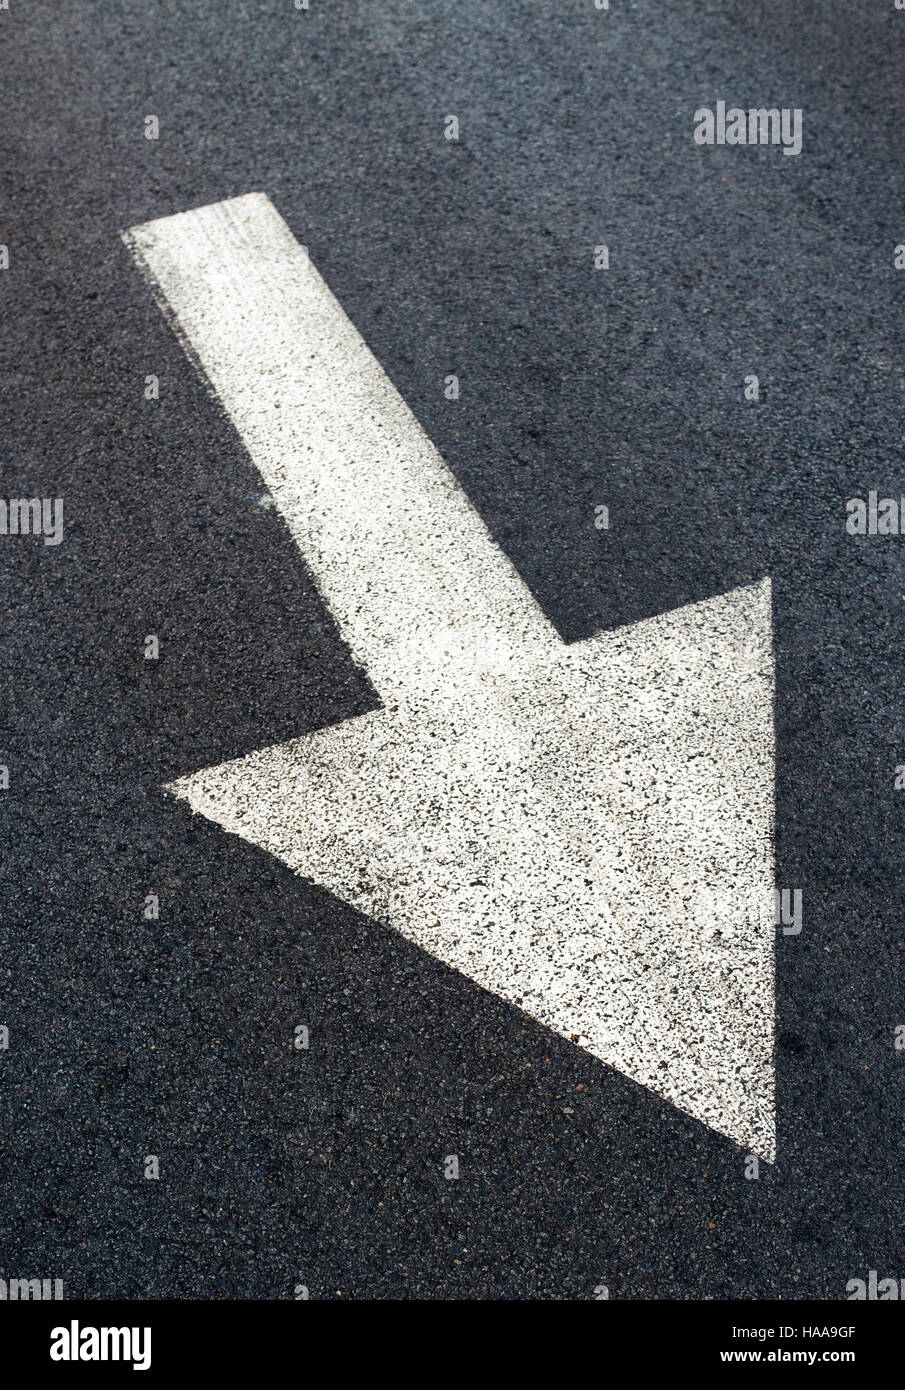 Freccia bianca sulla strada asfaltata, segno di traffico marcatura sulla carreggiata Foto Stock